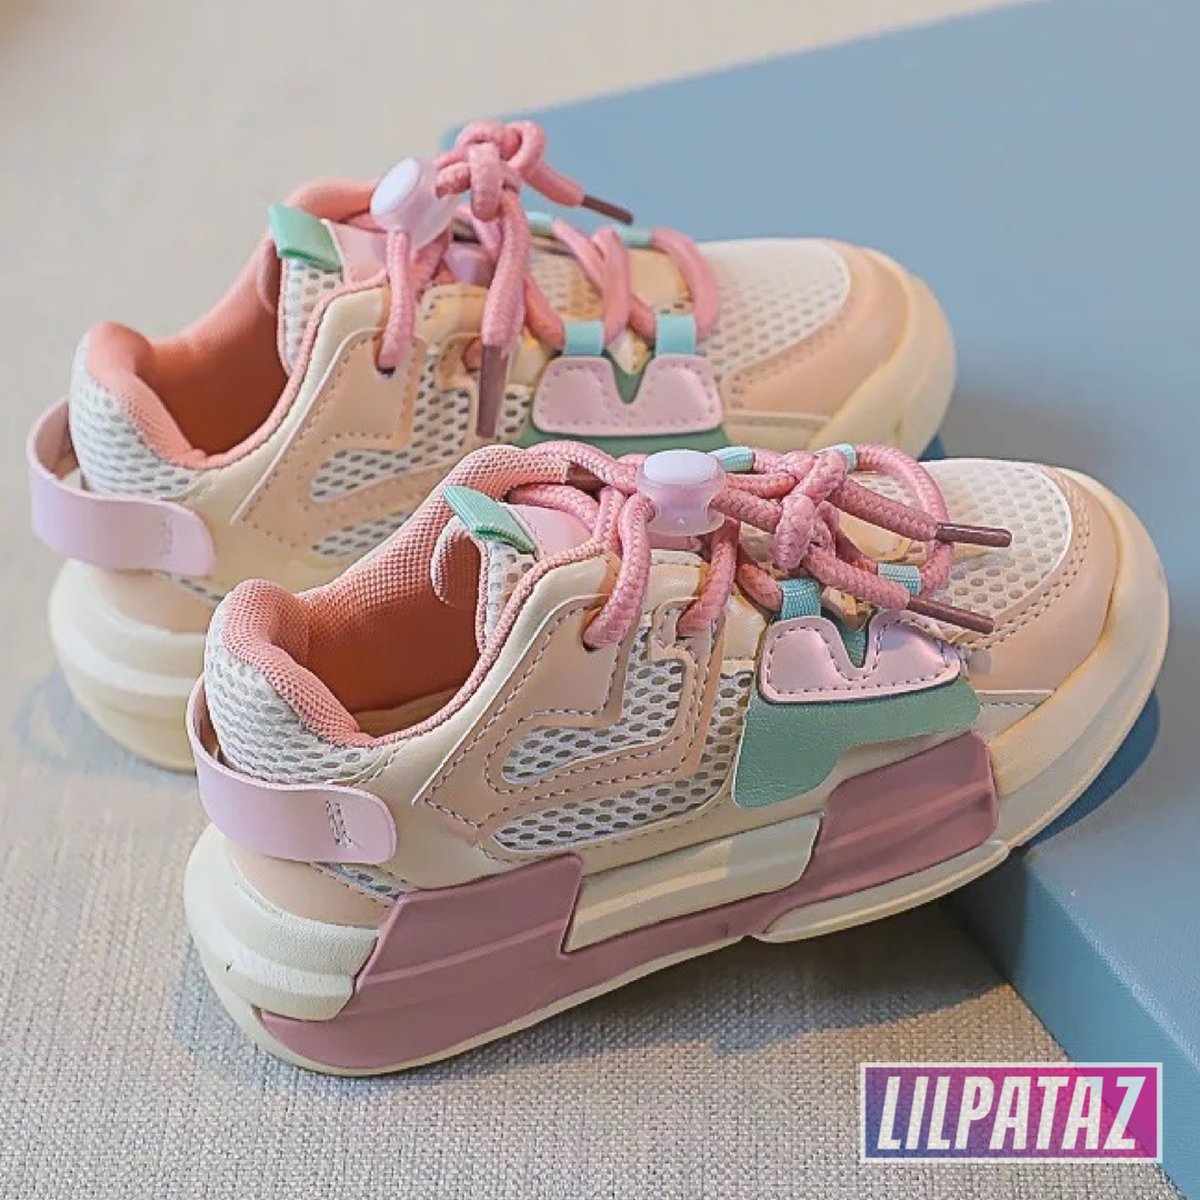 LilPataz SkyWingz Pink - Lage sneakers - meisjes kids kinderen - Roze Wit - Maat 29